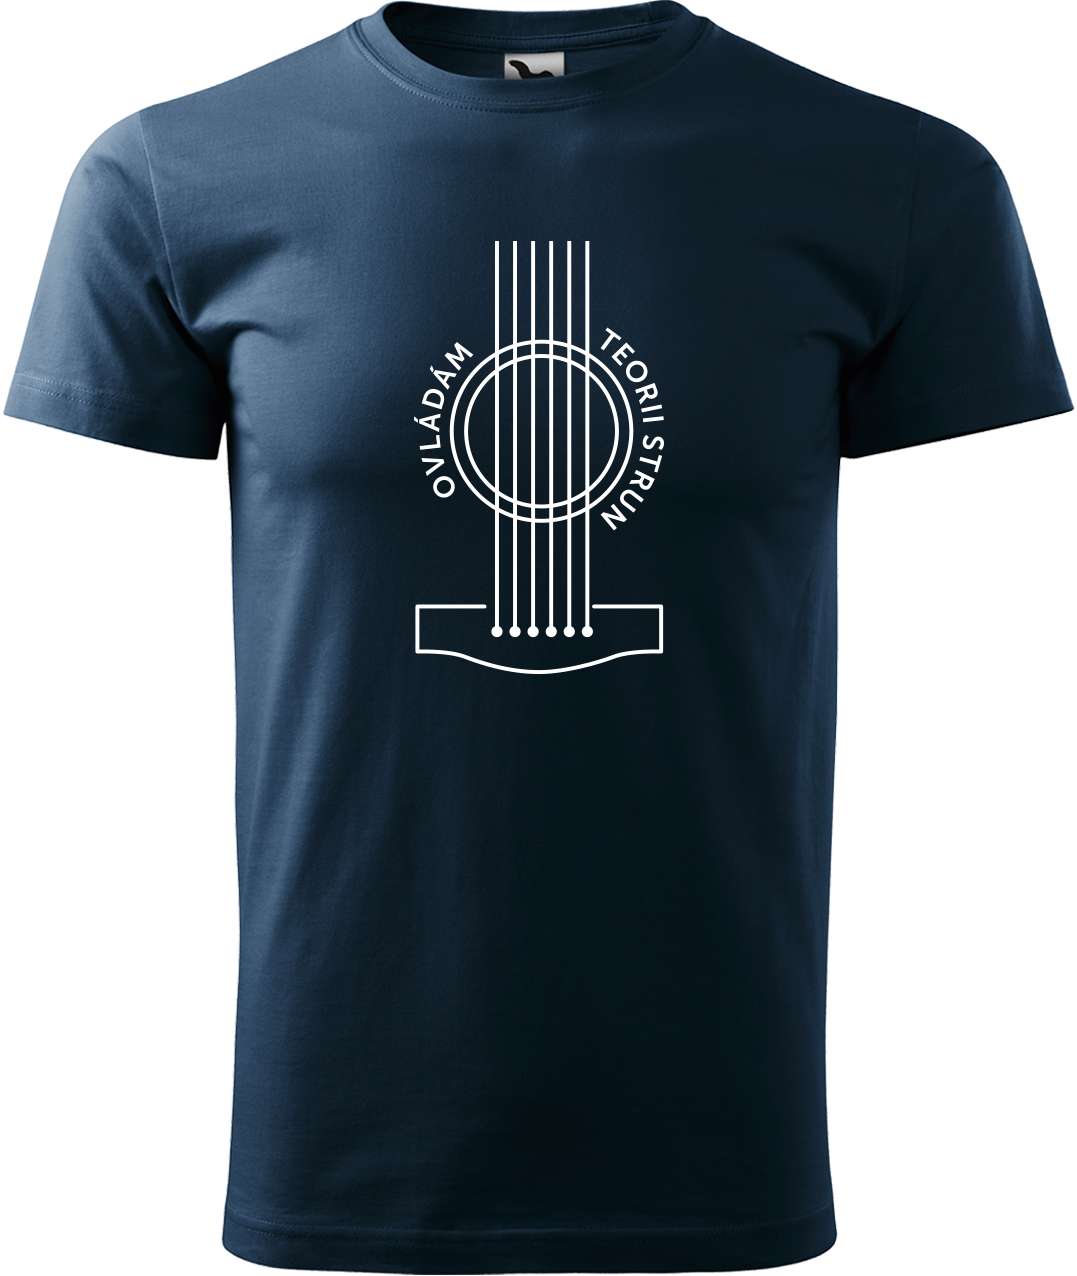 Pánské tričko s kytarou - Teorie strun Velikost: L, Barva: Námořní modrá (02), Střih: pánský